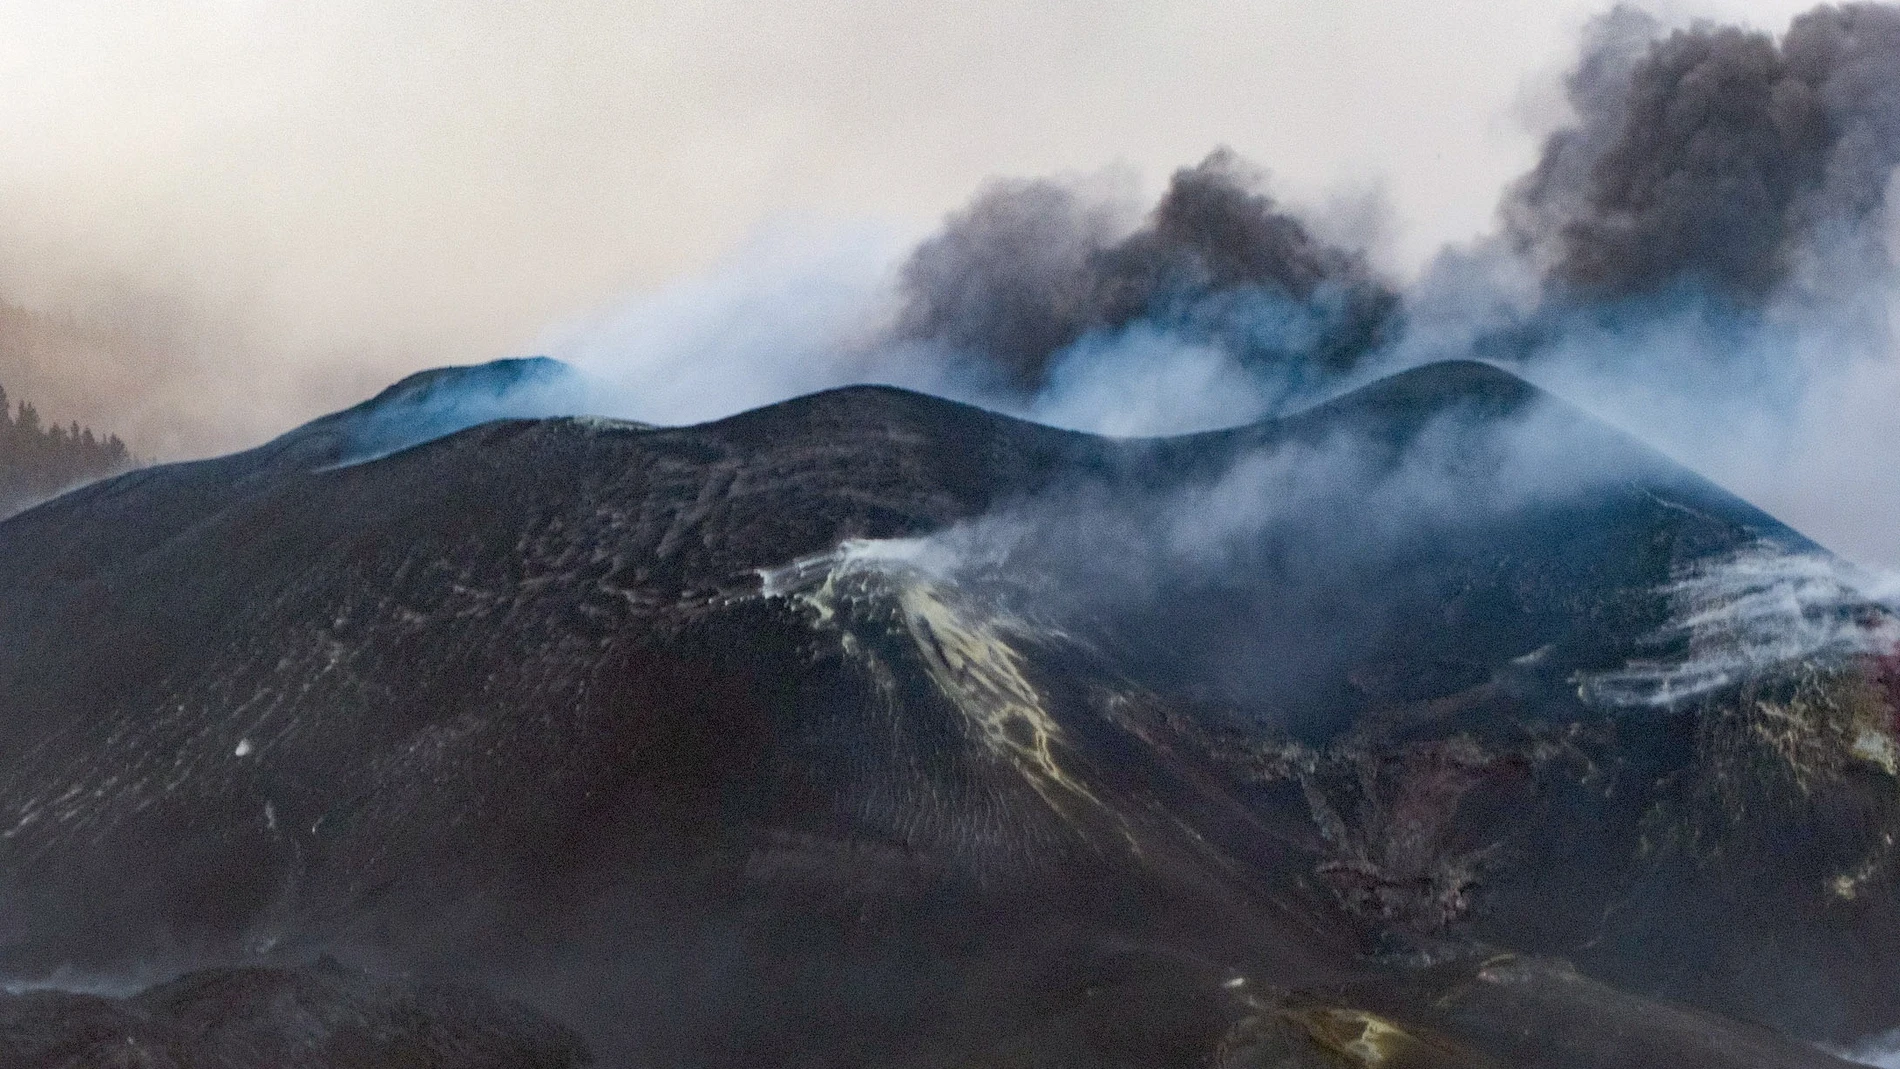 El volcán de Cumbre Vieja, en La Palma, cesó su actividad explosiva este viernes por la tarde, lo que permite verlo con más claridad